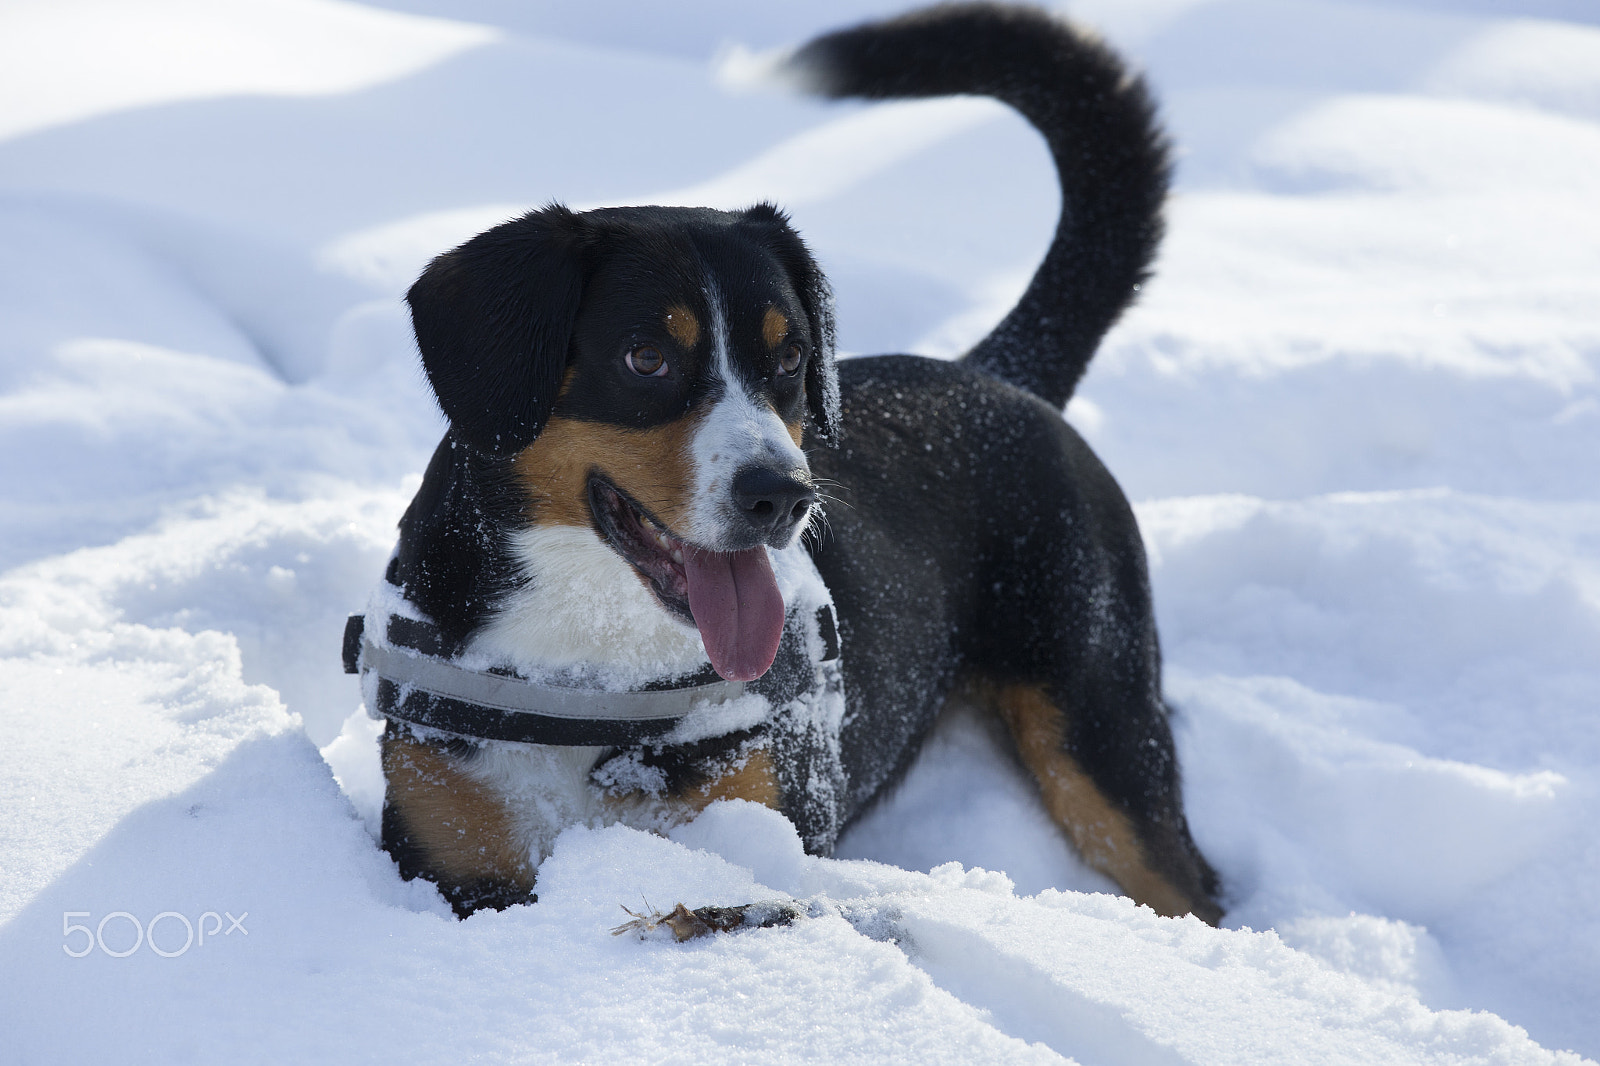 Canon EOS-1D X sample photo. Dog plays on fresh snow photography